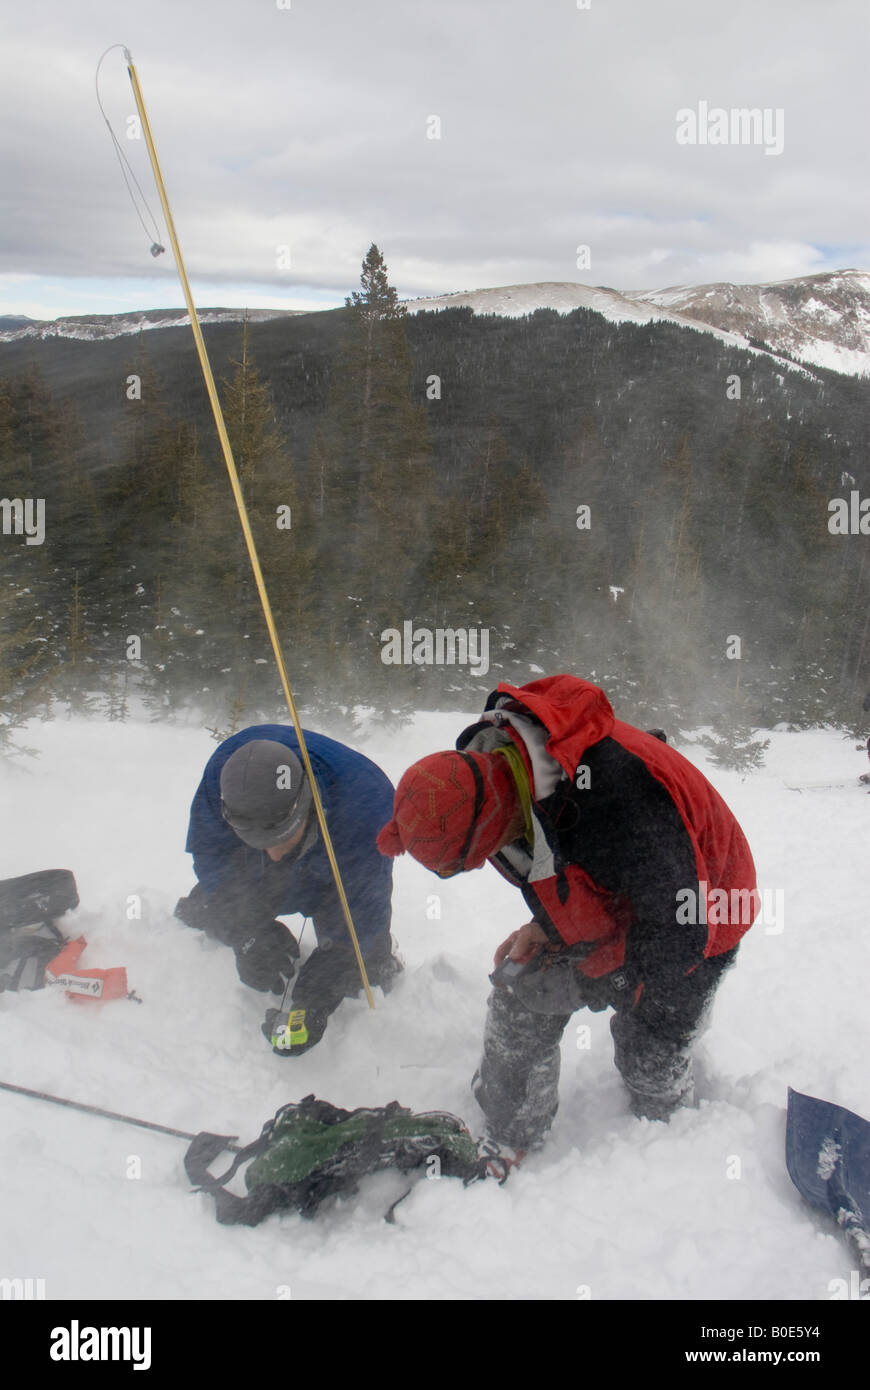 Récupération d'Avalanche ski- en utilisant un phare et un pôle de la sonde dans la neige à la recherche d'une victime ensevelie Banque D'Images